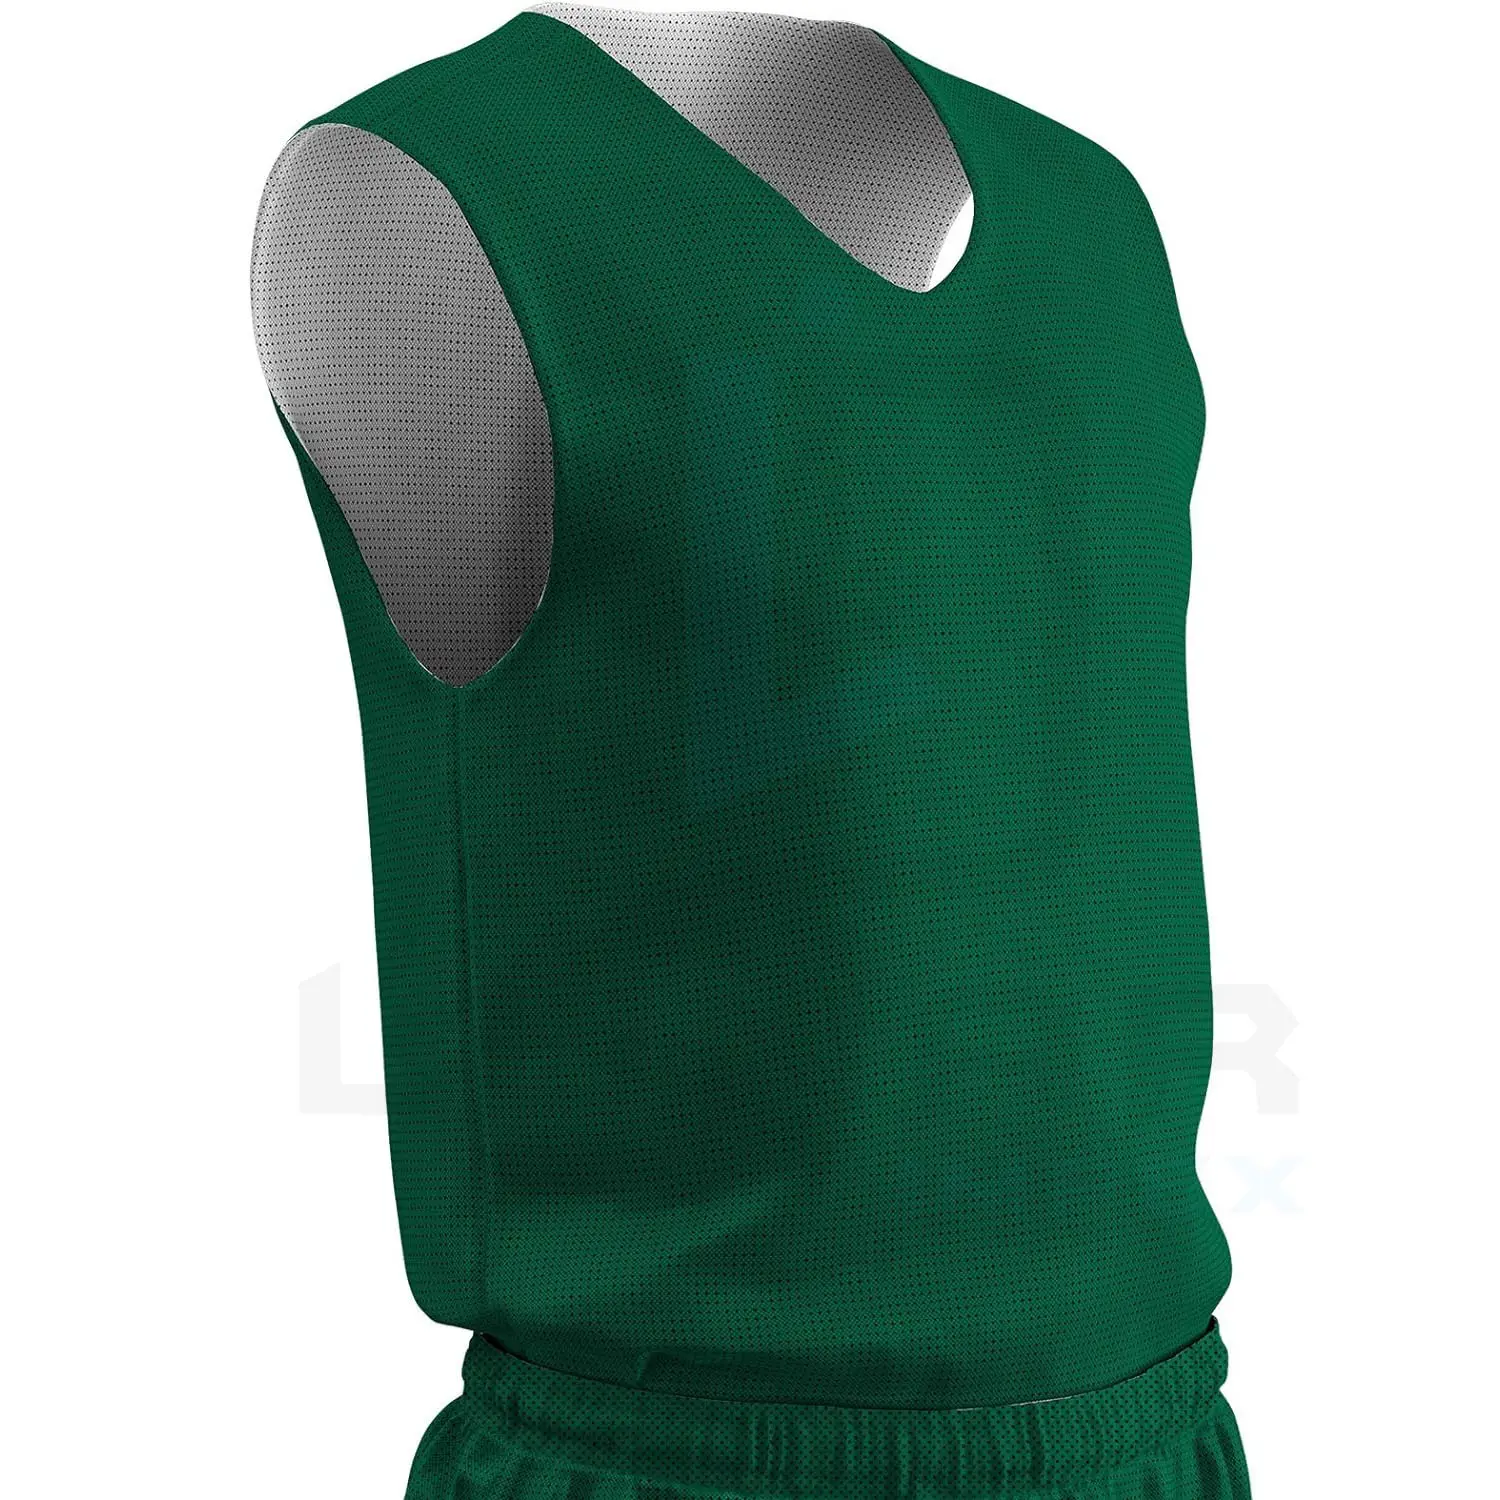 Зеленый и белый баскетбольный трикотаж двухцветный полностью обратимый пользовательский цвет и название команды сублимационная печать способность